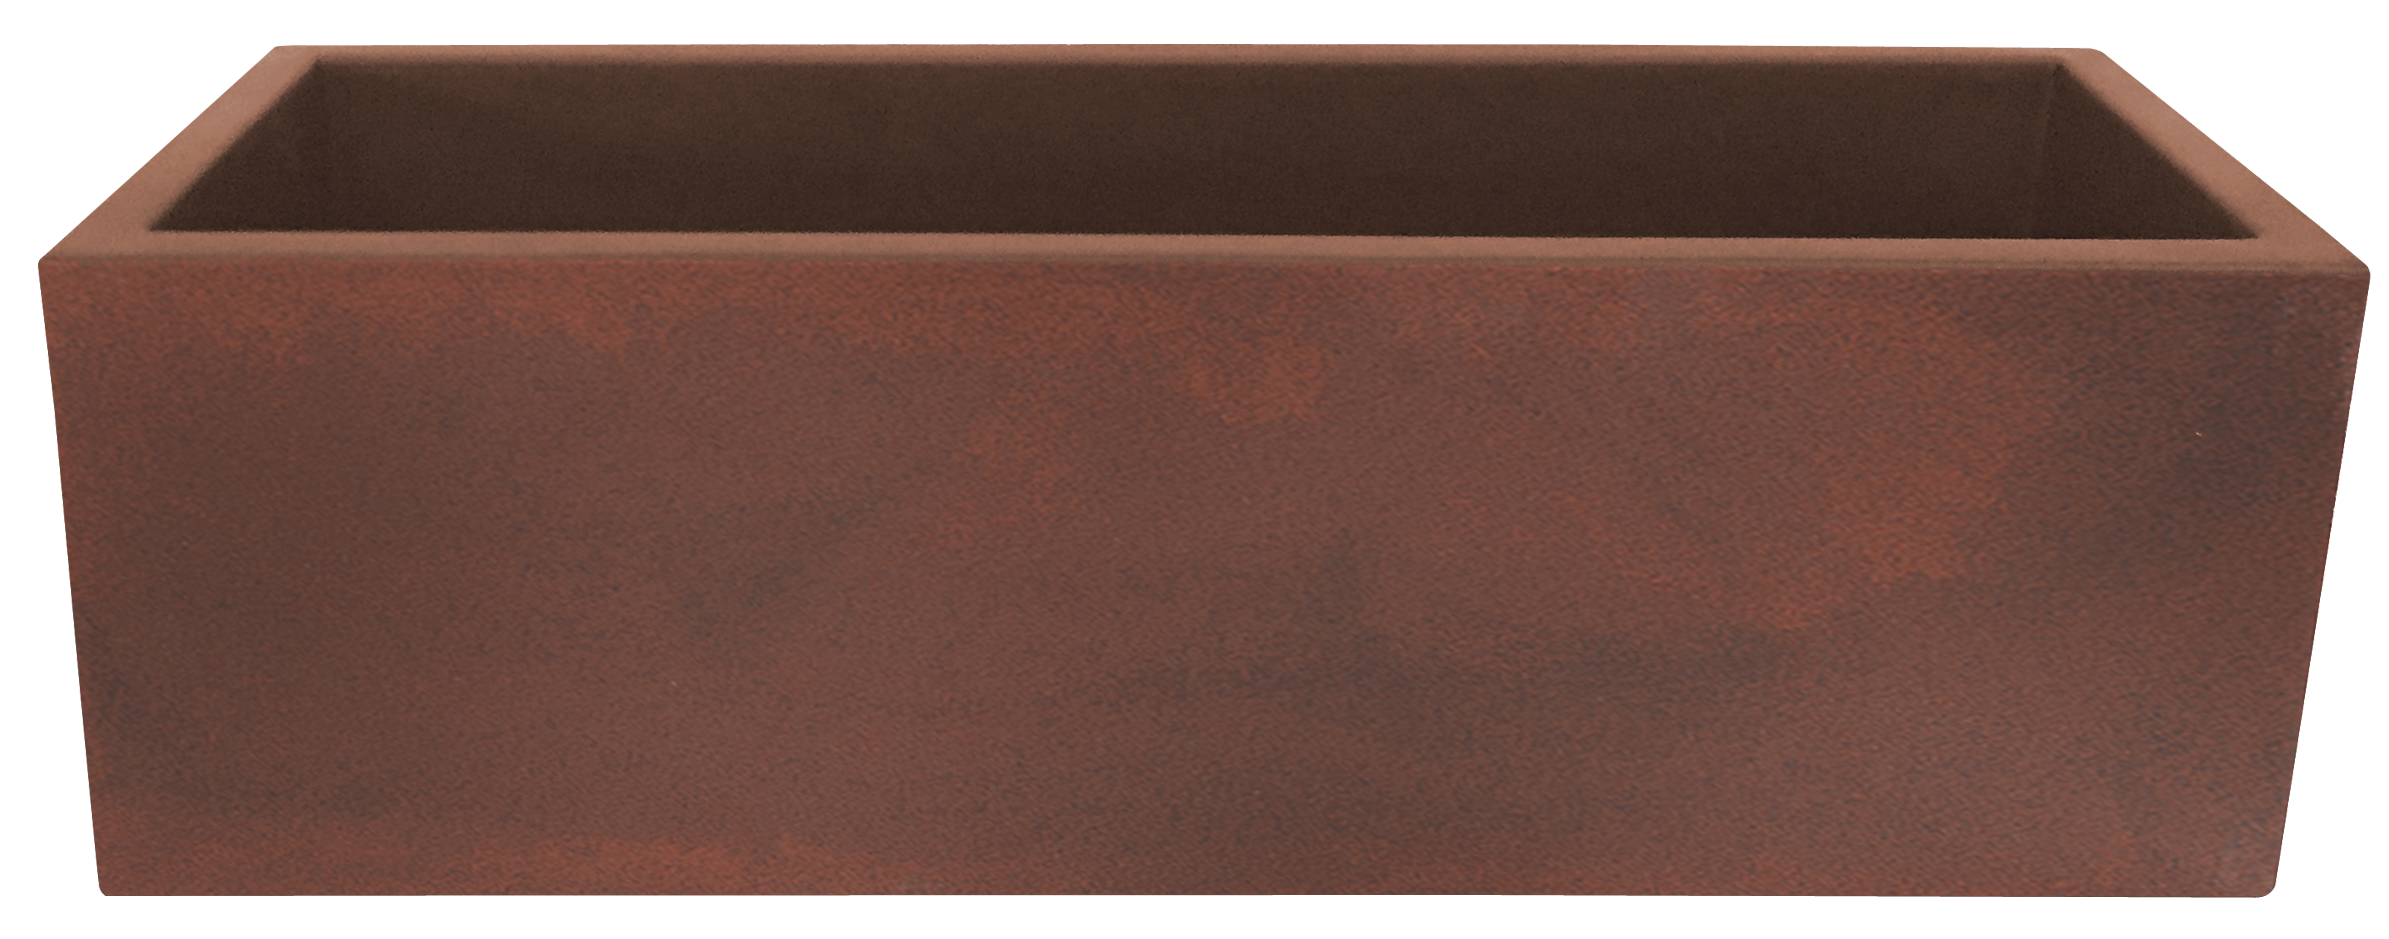 Maceta de polietileno jara marrón 100x35 cm de la marca NEWGARDEN